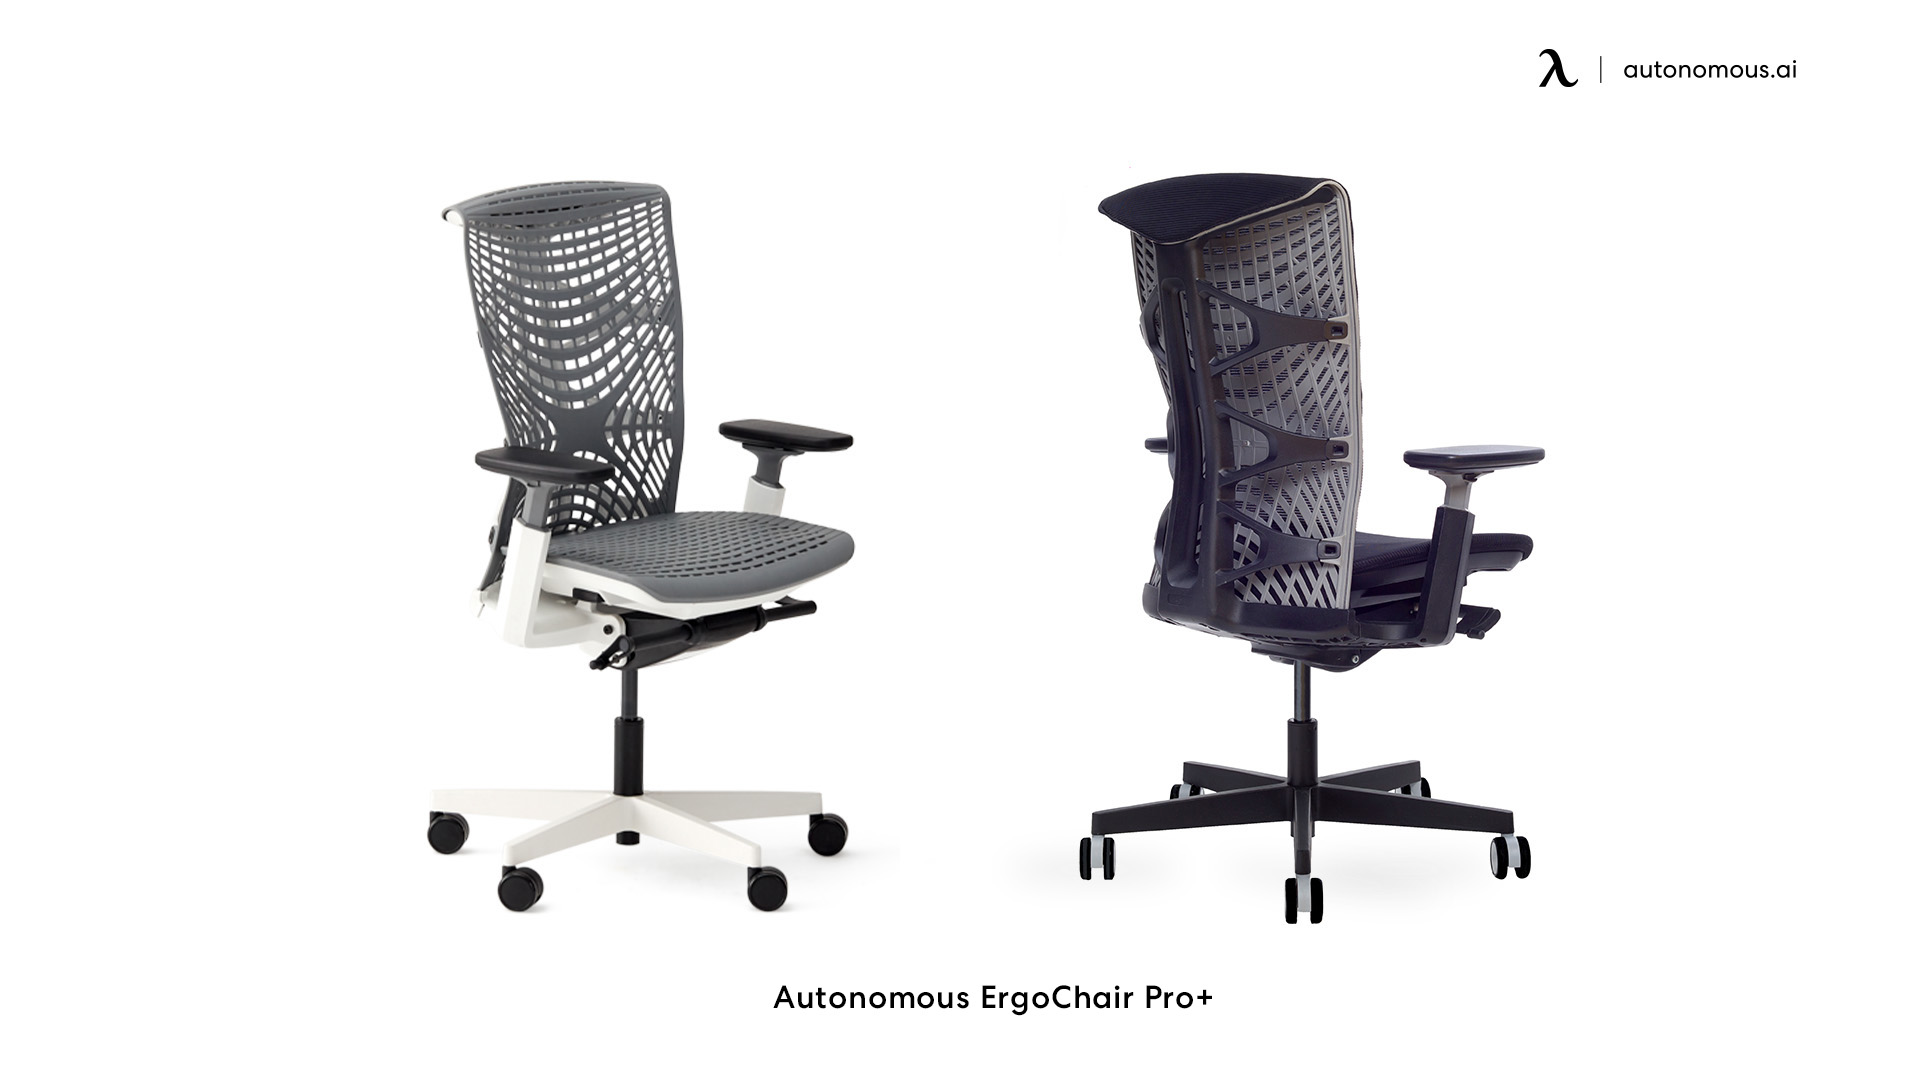 ErgoChair Plus tall office chair for standing desk